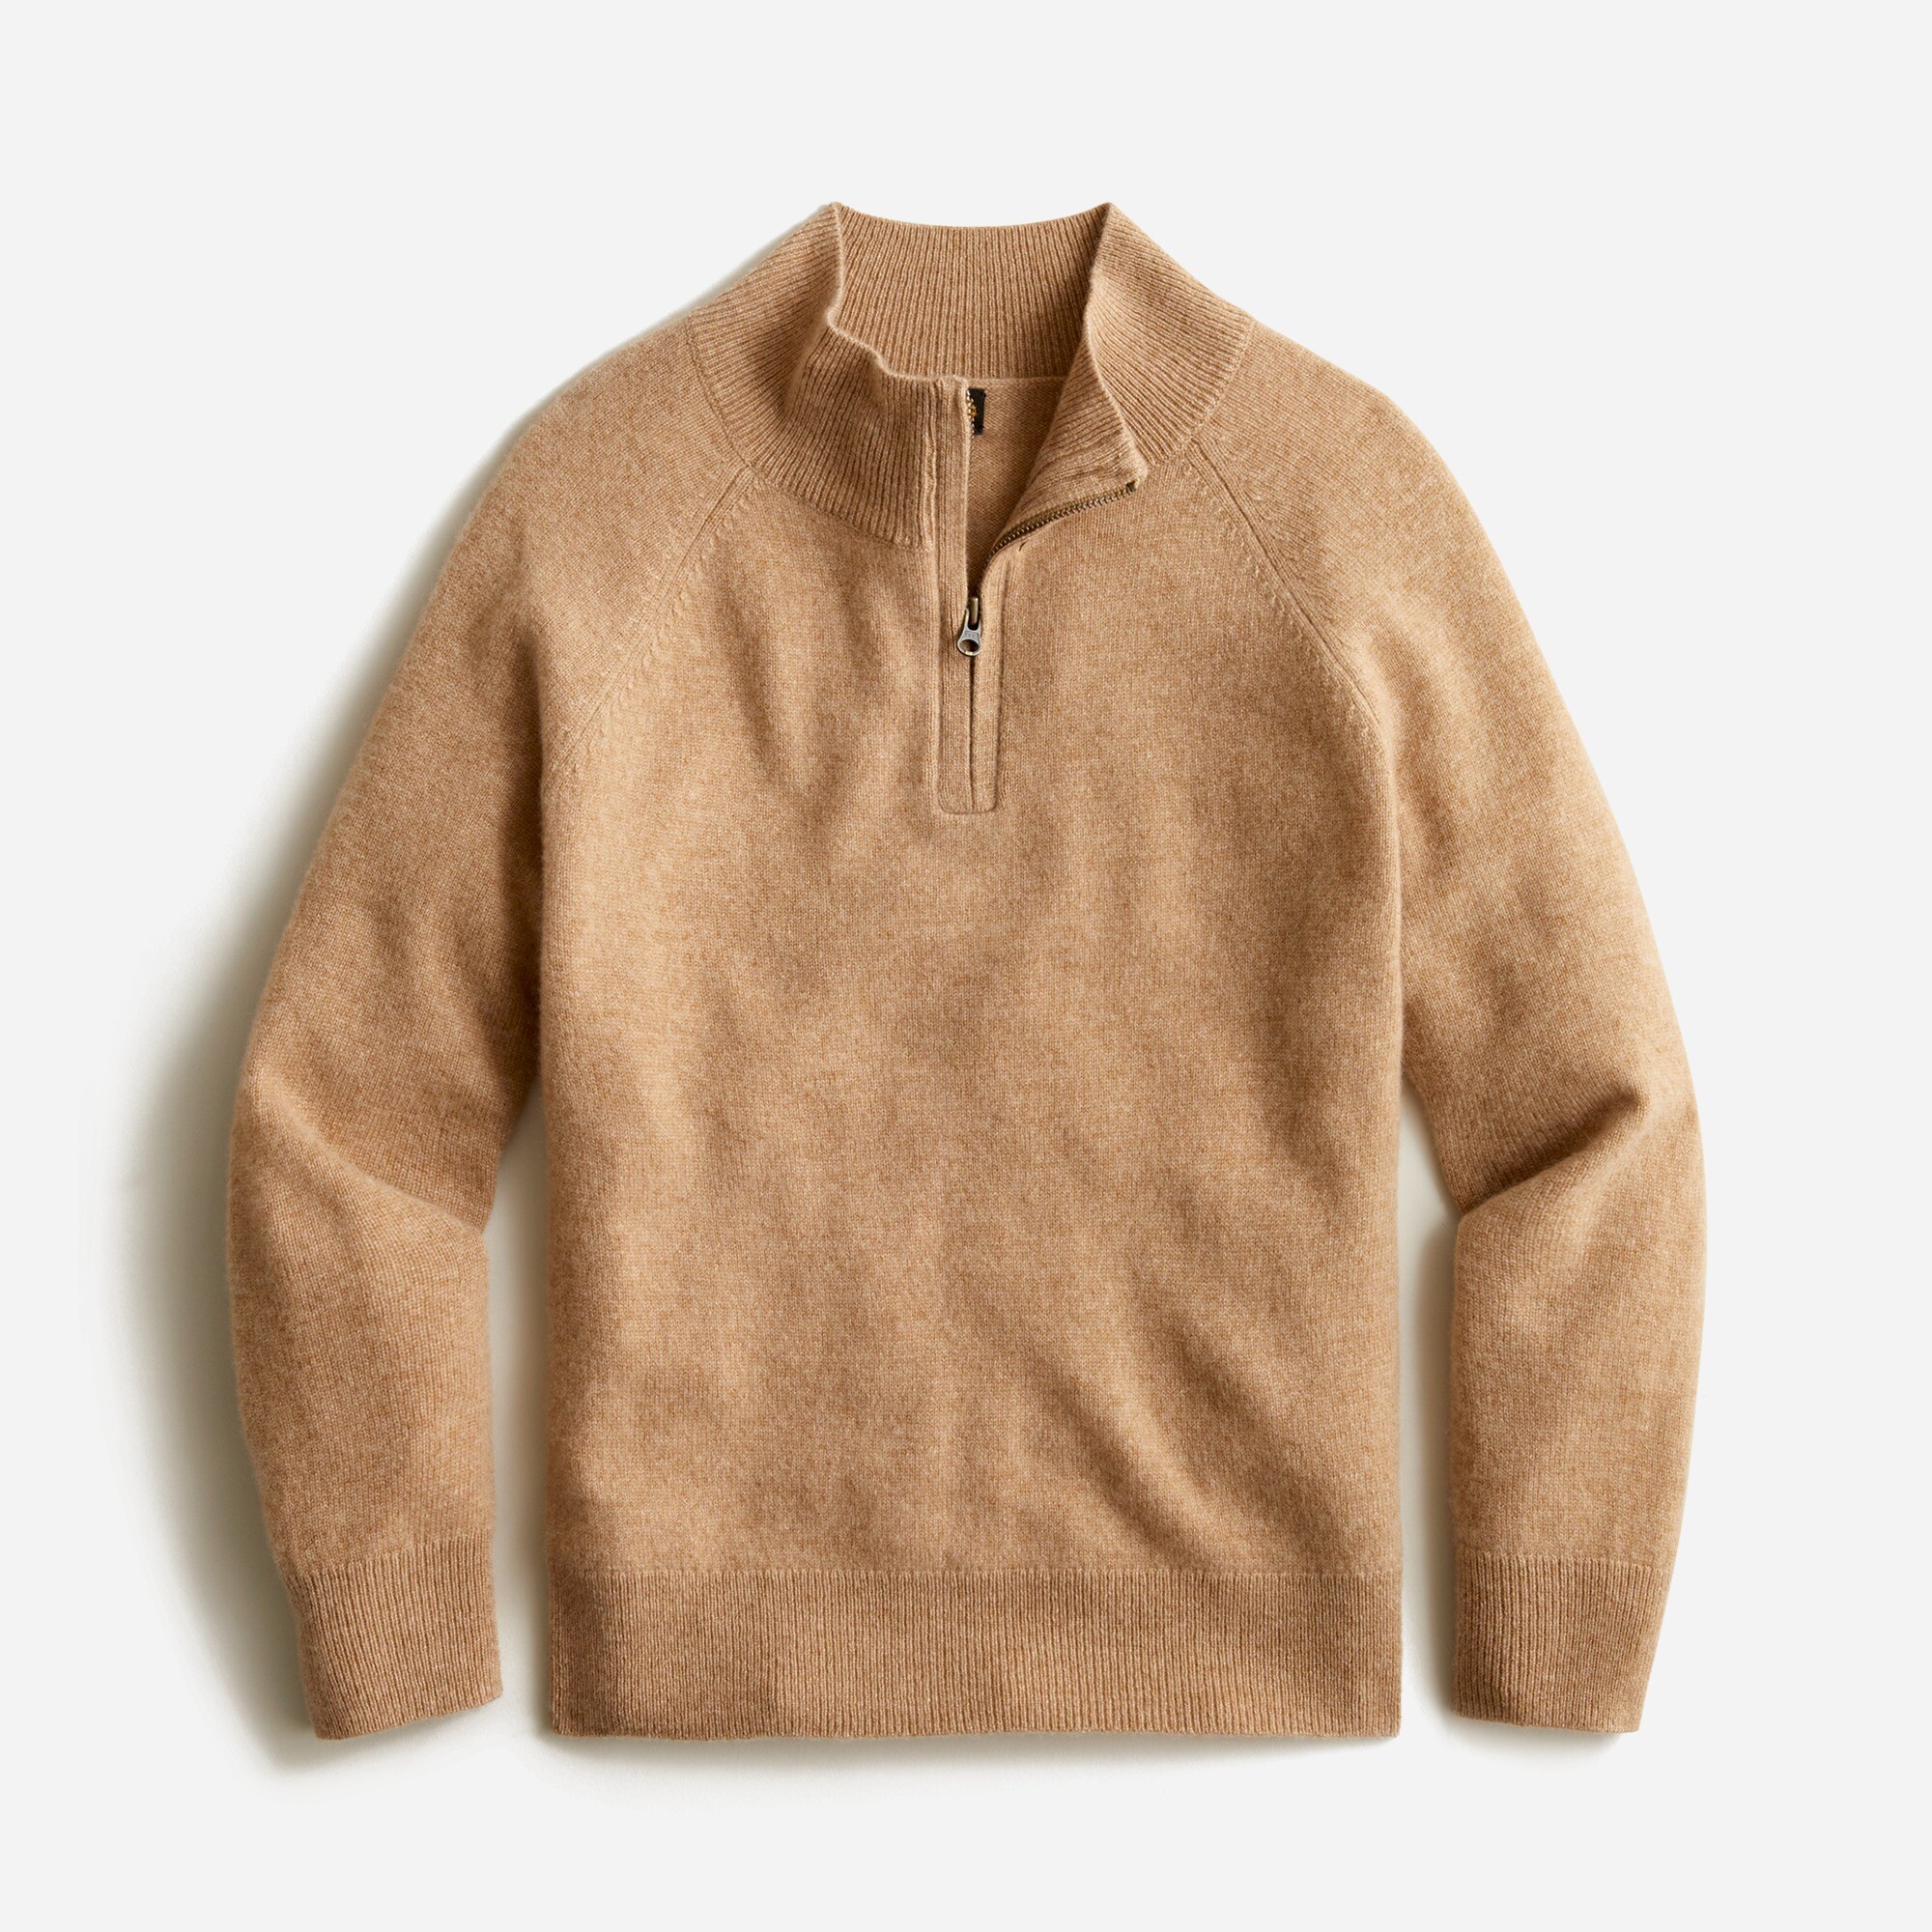 제이크루 보이즈 스웨터 J.crew Boys cashmere half-zip sweater,HTHR CAMEL